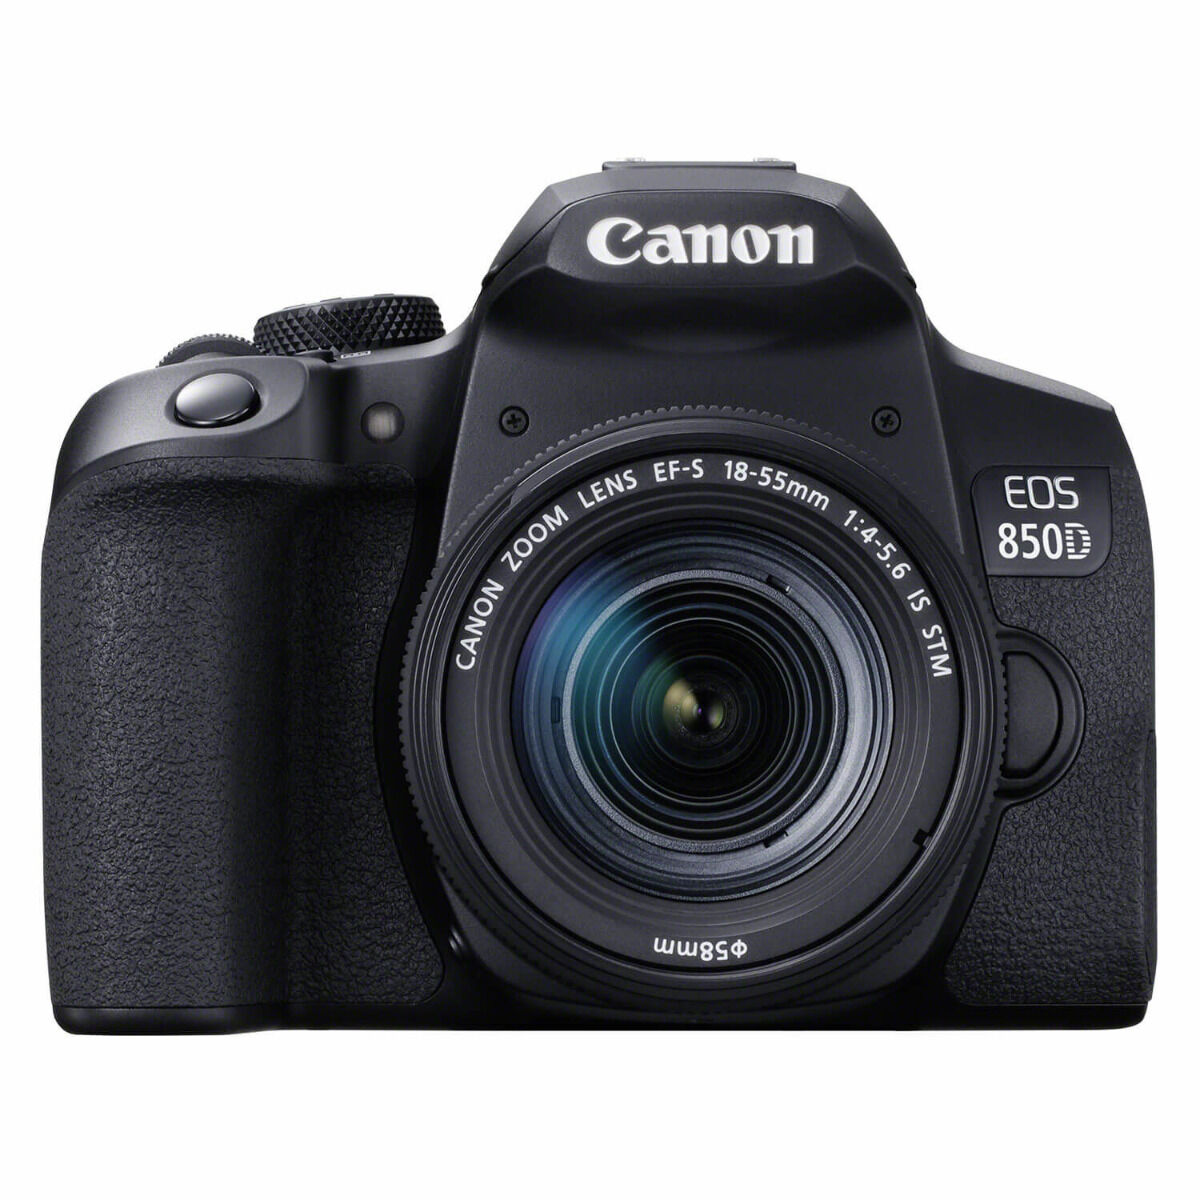 Canon EOS 850D DSLR + 18-55 mm f / 4.0-5.6 IS STM - Garanzia Centri di Assistenza Ufficiali Italia EXTRA SCONTO a Carrello